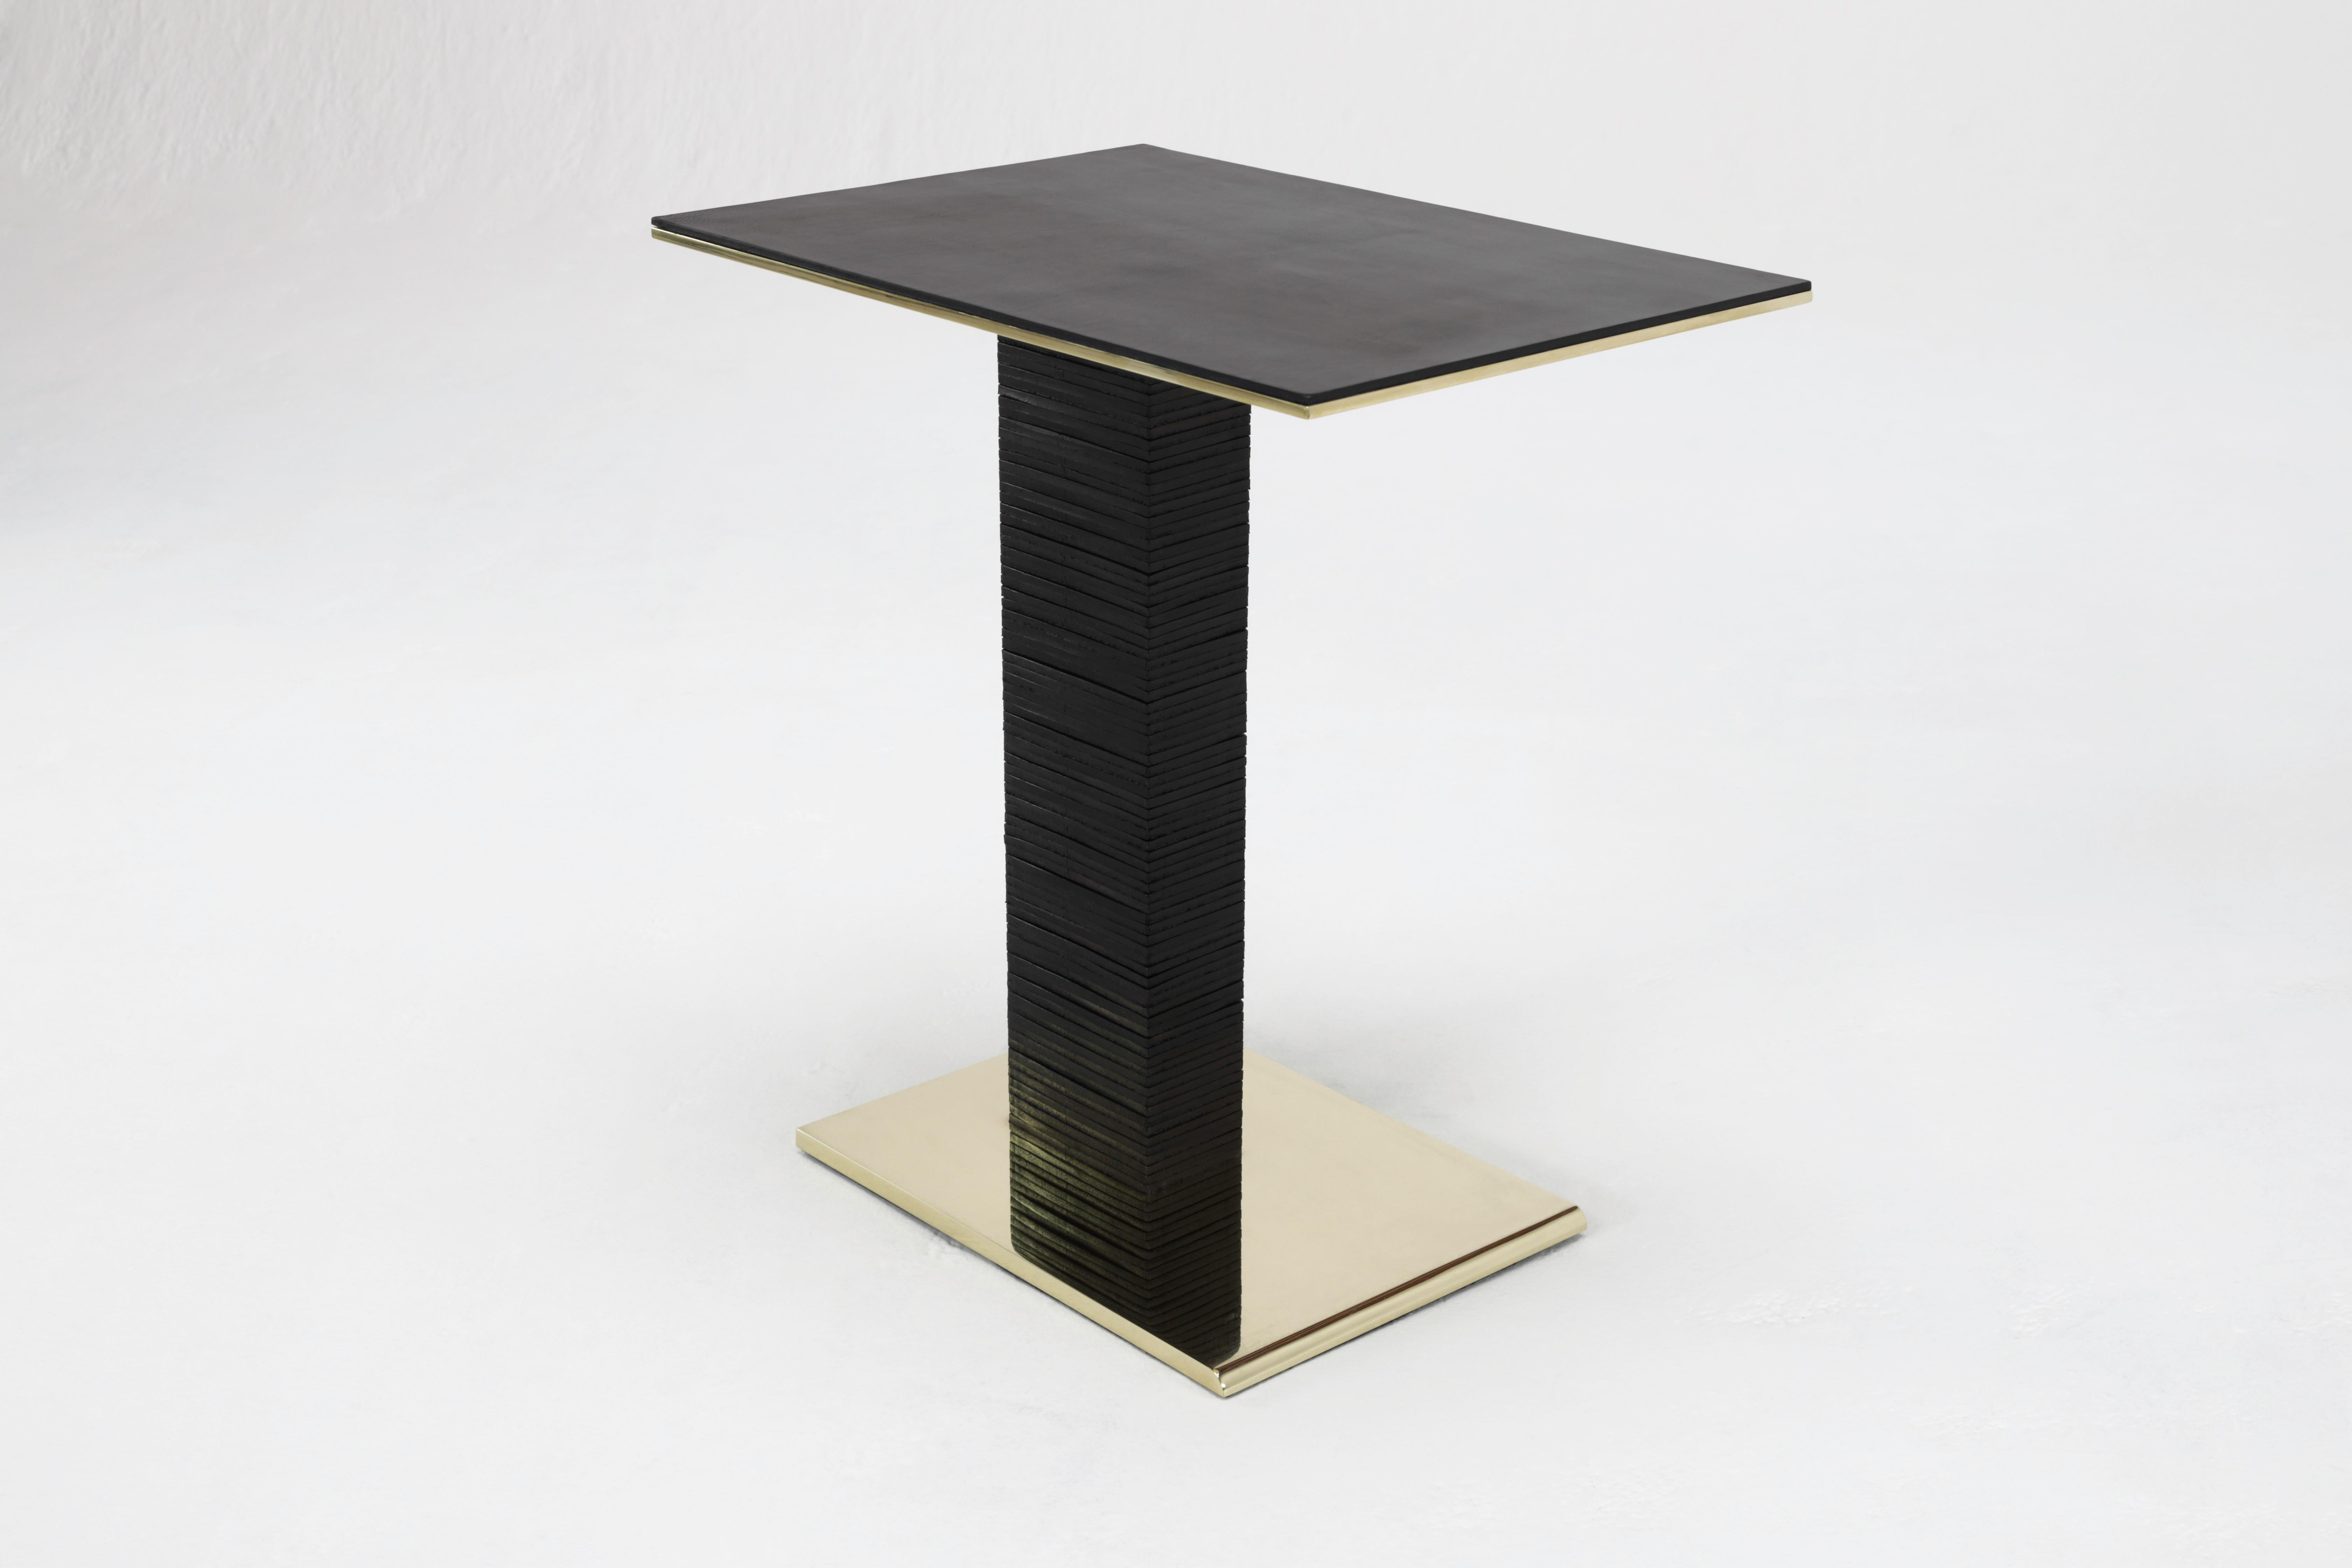 La table d'appoint Cantilever Infinity s'inspire de l'utilisation par Paul Dupré-Lafon de cuir superposé dans ses créations pour Hermès. La base est en laiton massif, biseautée à l'avant, et polie miroir sur tous les côtés. Plus de quatre-vingts